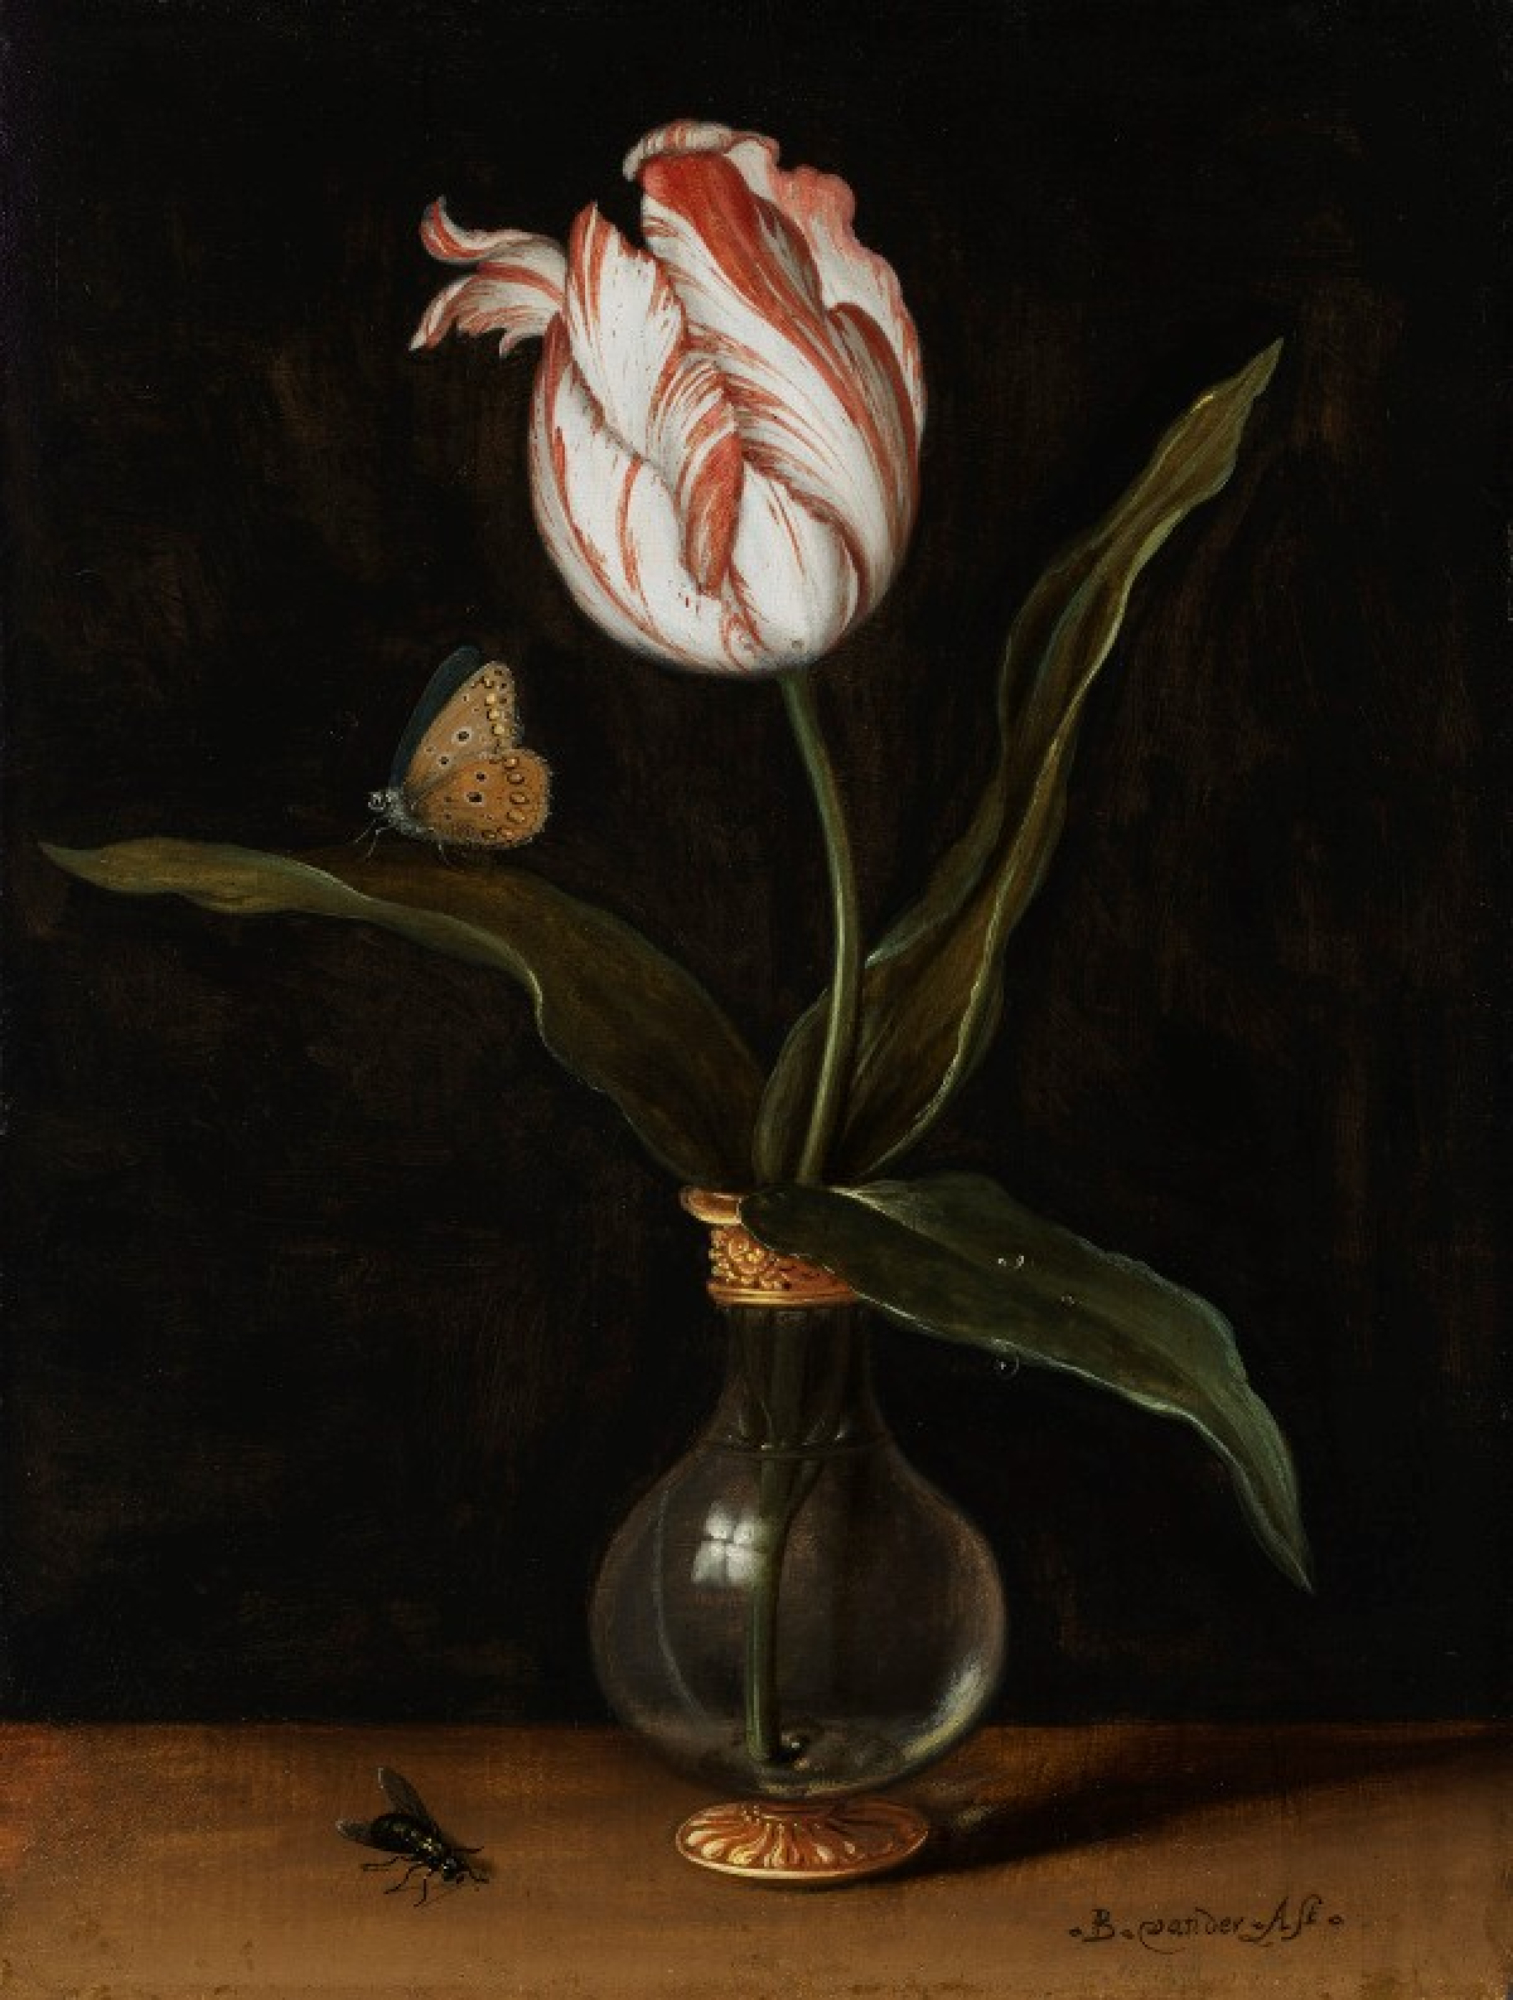 Mauritshuis verwerft nieuwe tulp voor zijn collectie